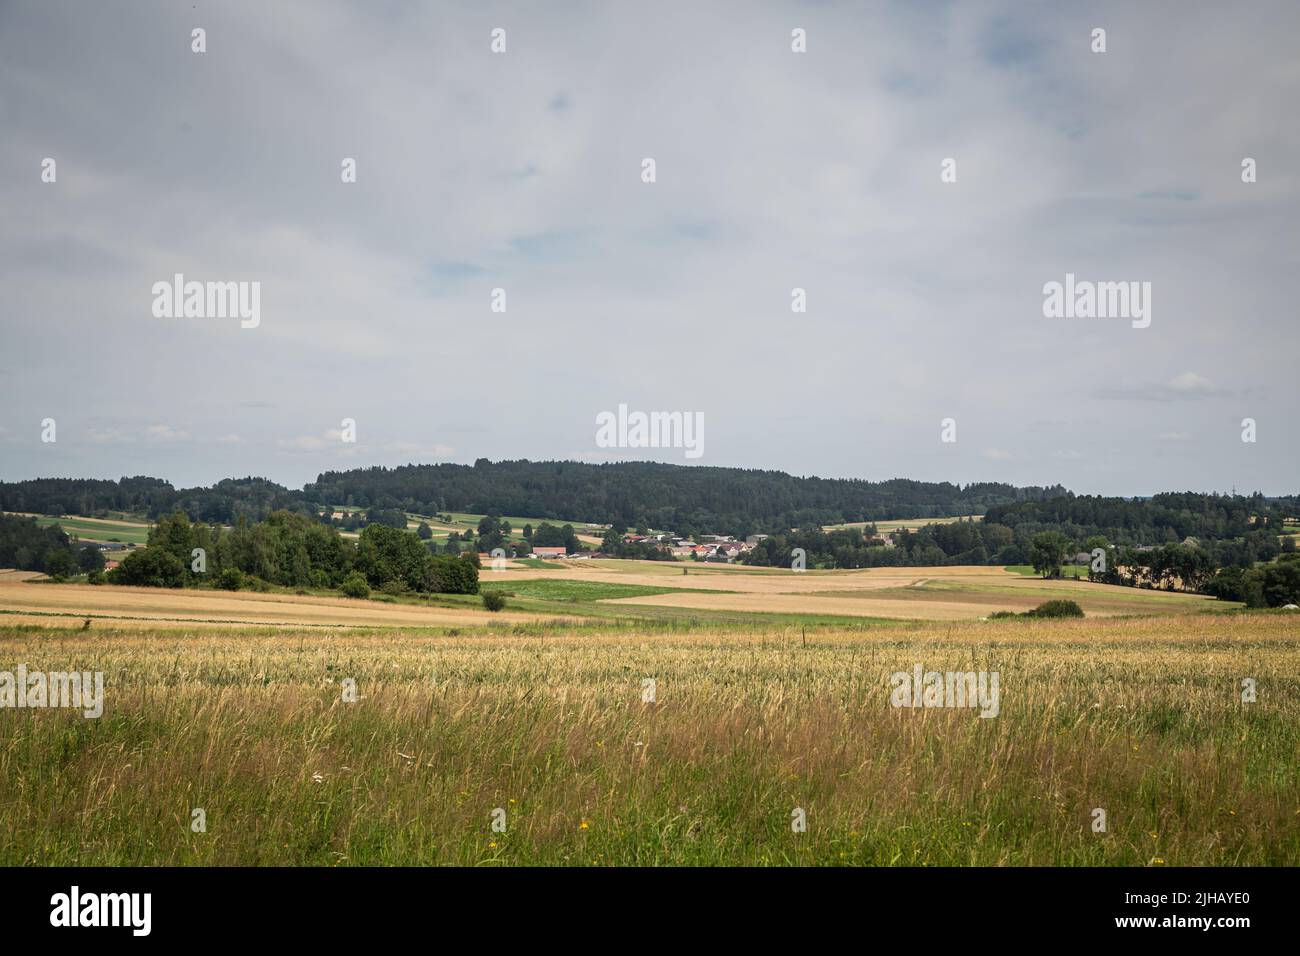 Paysage typique de Waldviertel - champs, prairies et forêt - randonnée près de Siebenlinden dans le Waldviertel, Autriche Banque D'Images